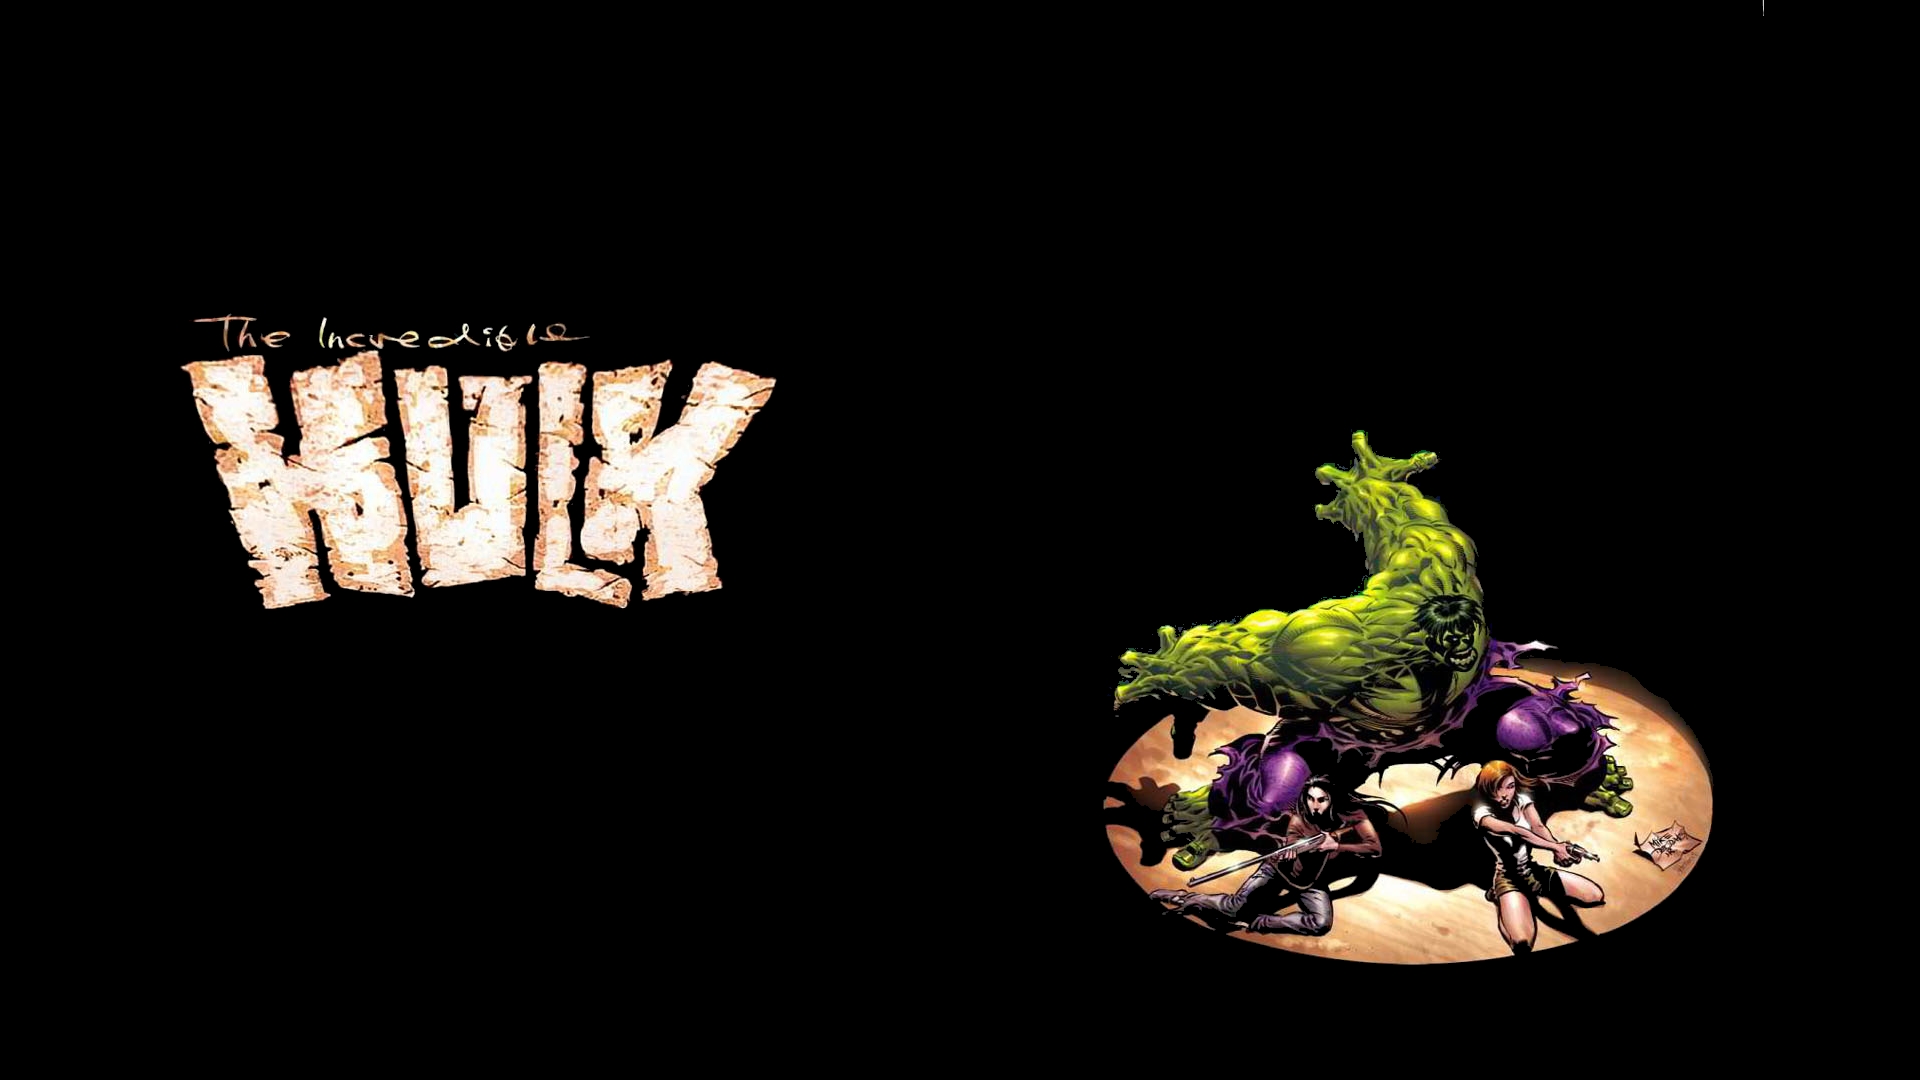 Incredible Hulk Wallpaper For Desktop